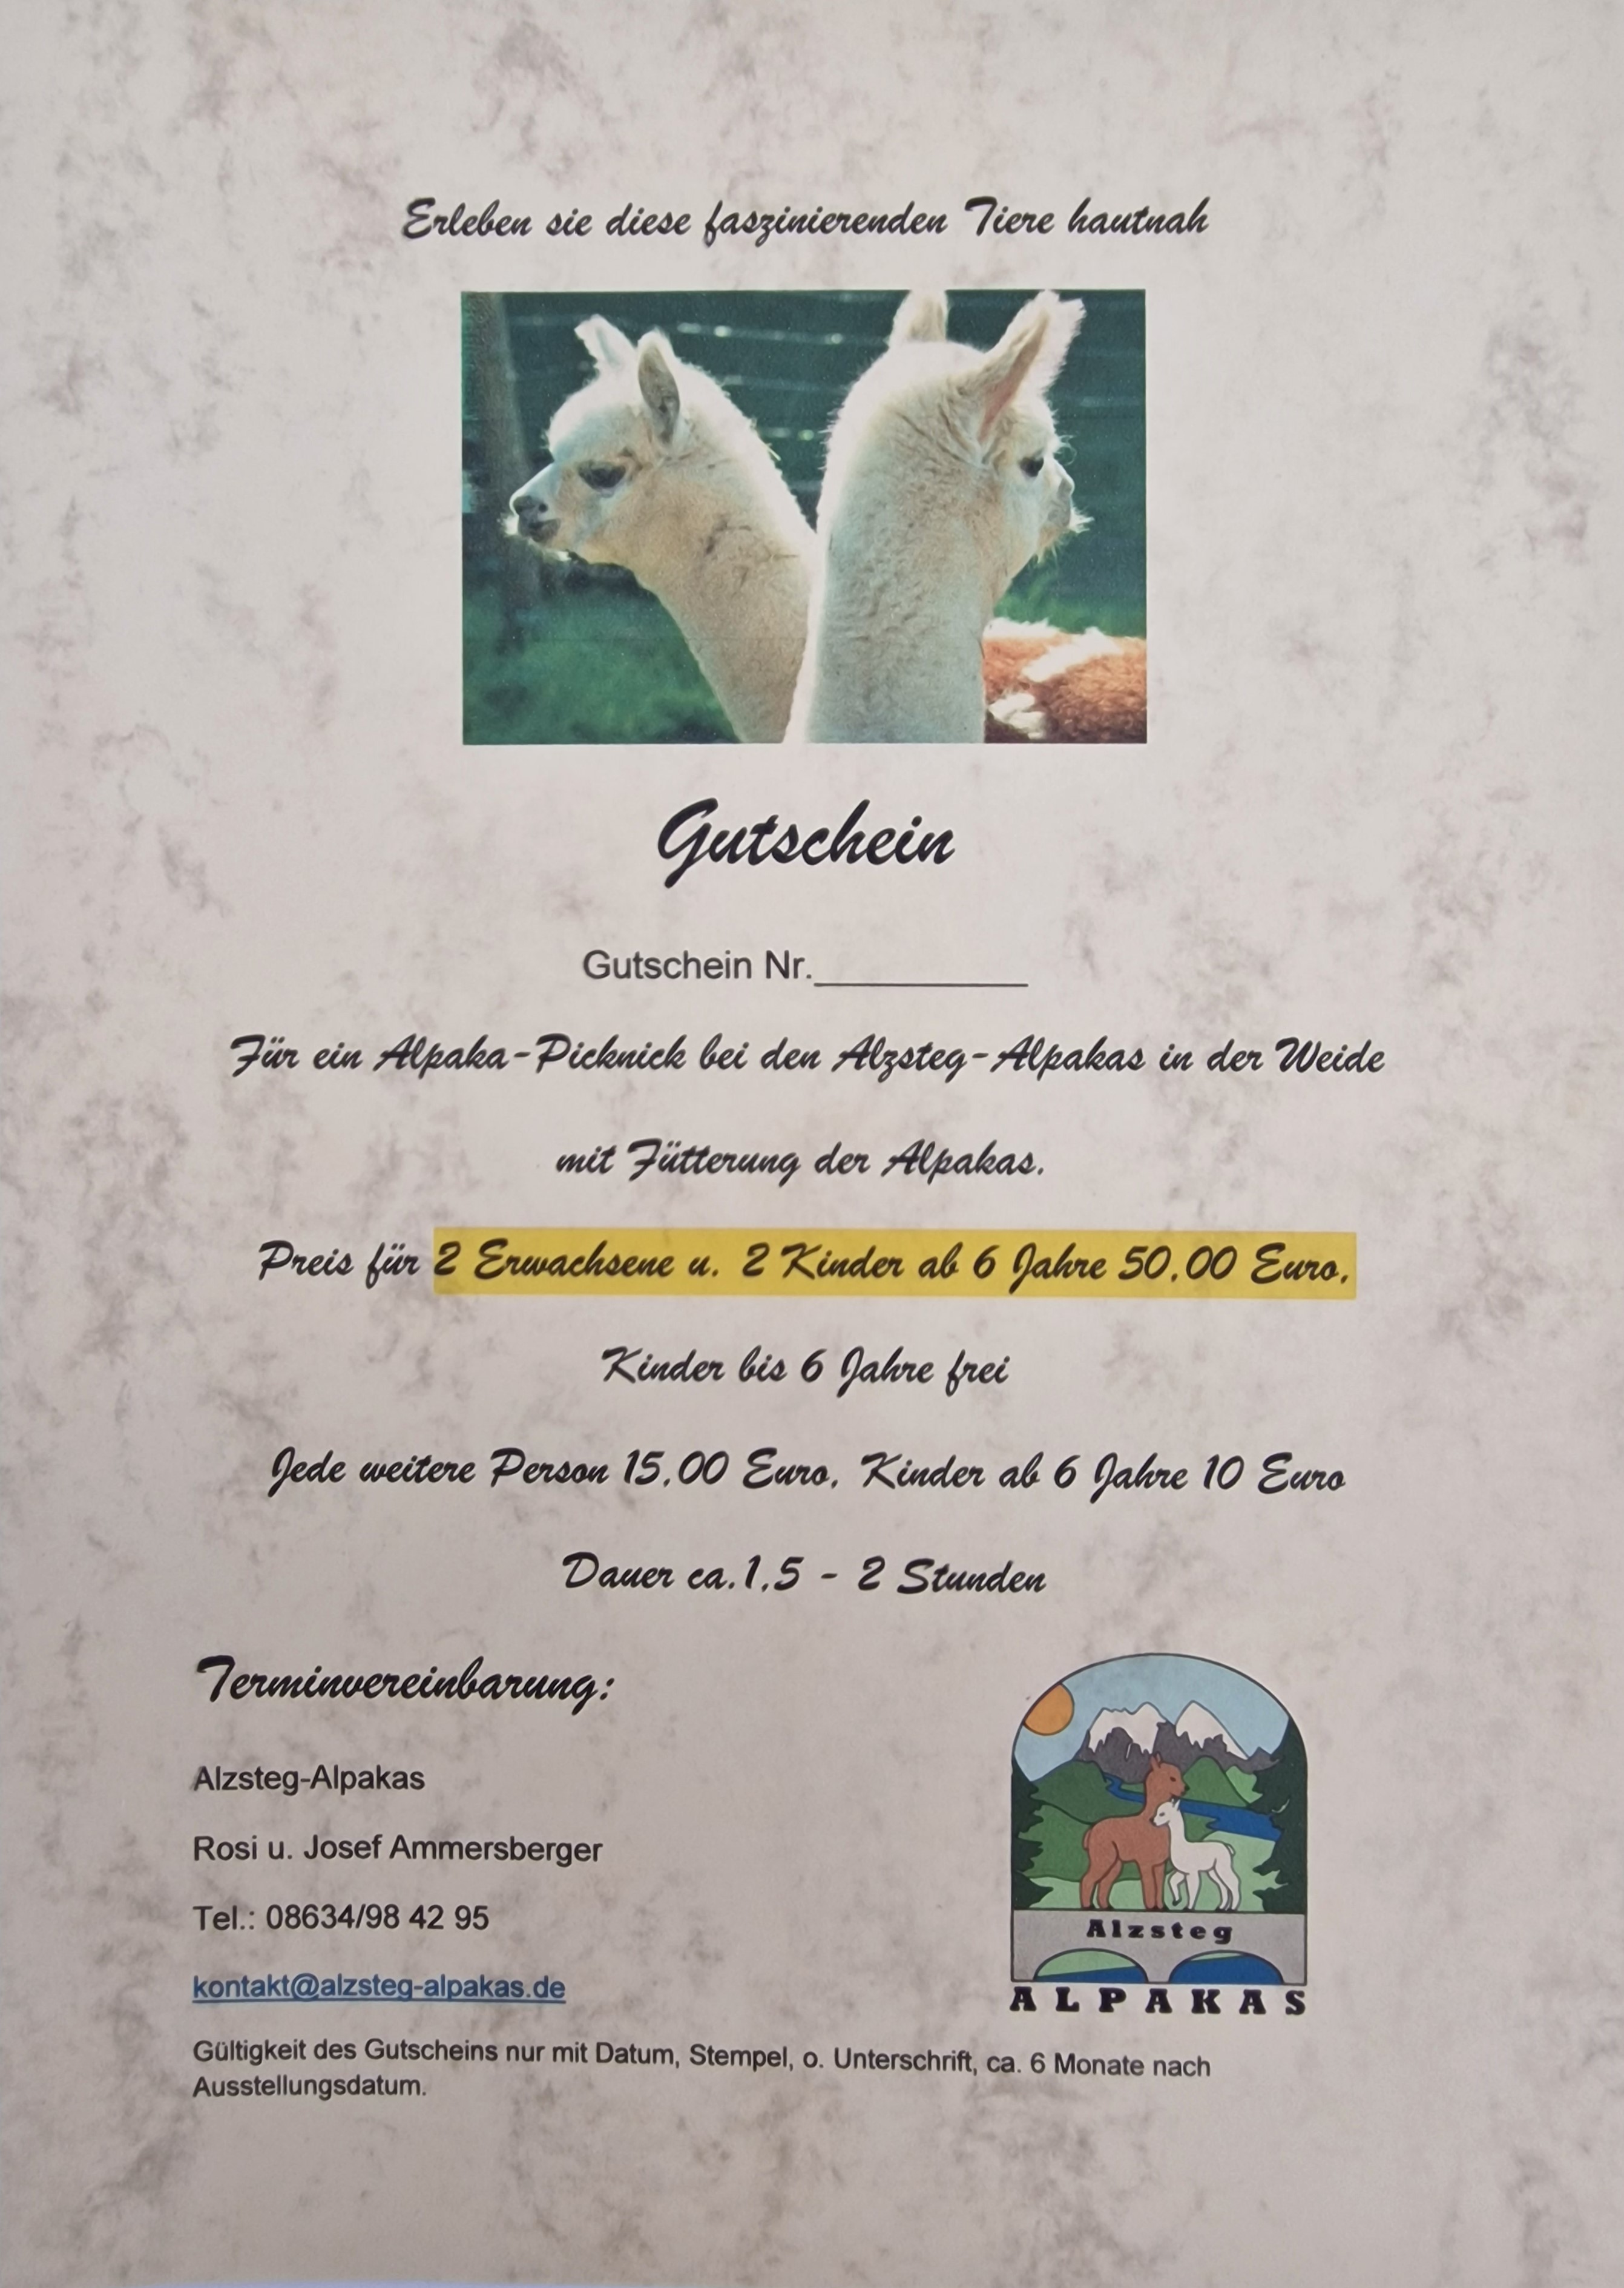 Alzsteg-Alpakas | Gutschein für ein Alpaka - Picknick